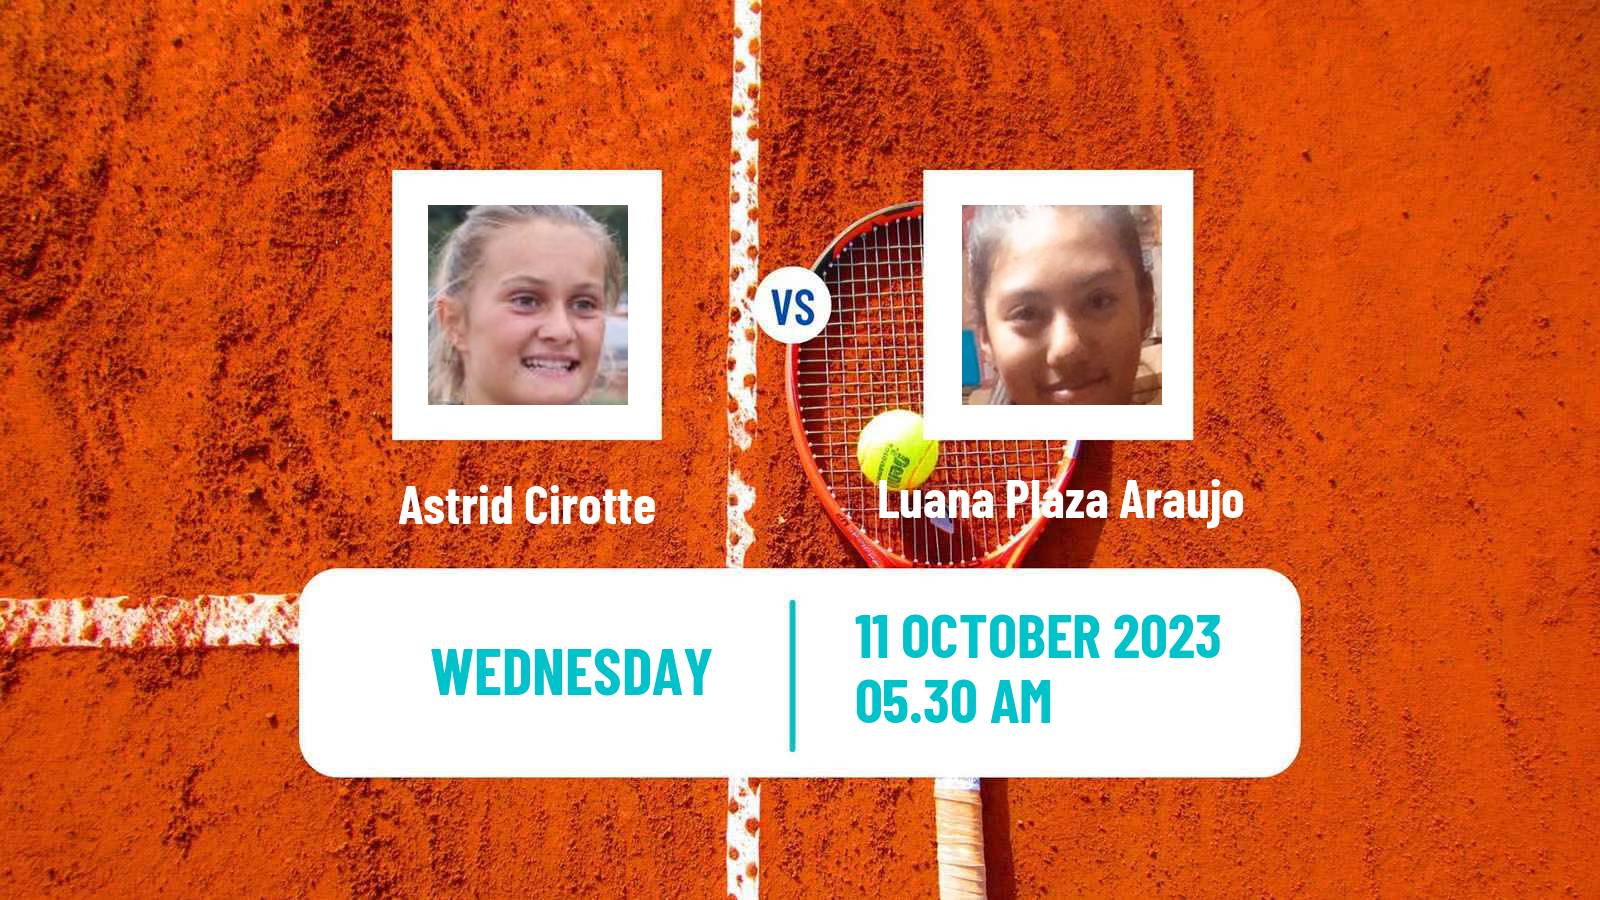 Tennis ITF W15 Monastir 36 Women Astrid Cirotte - Luana Plaza Araujo